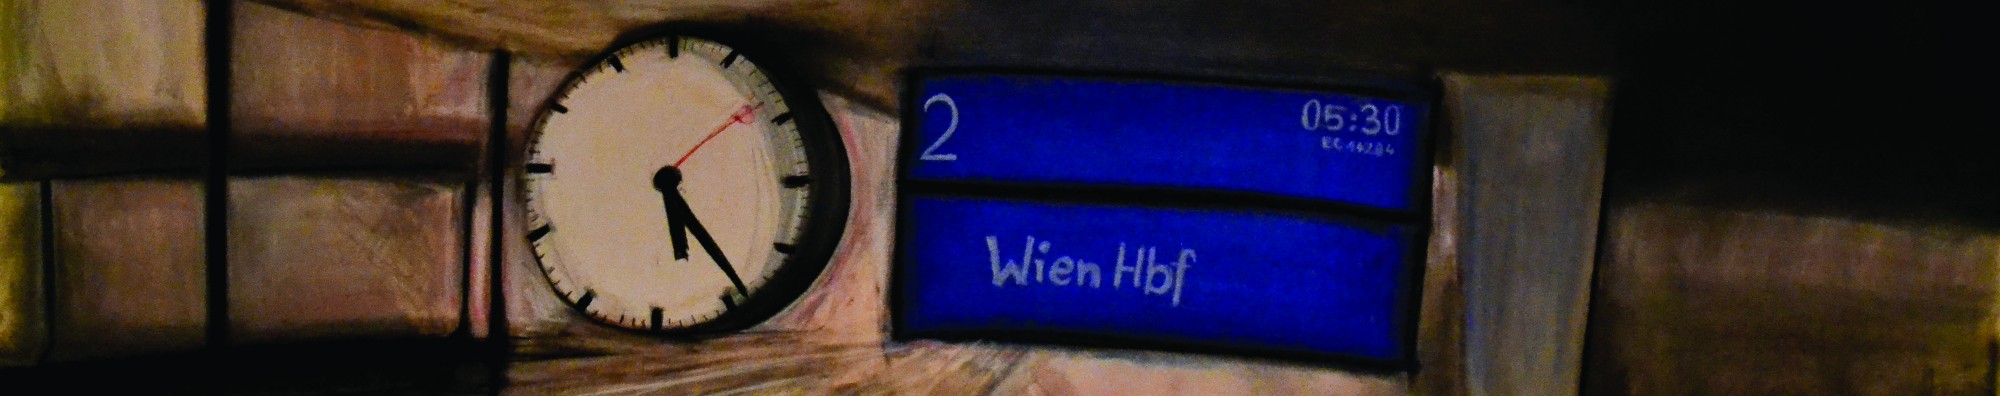 Bahnhofsuhr und blaue Anzeige, auf der ein Zug nach Wien Hbf angekündigt wird